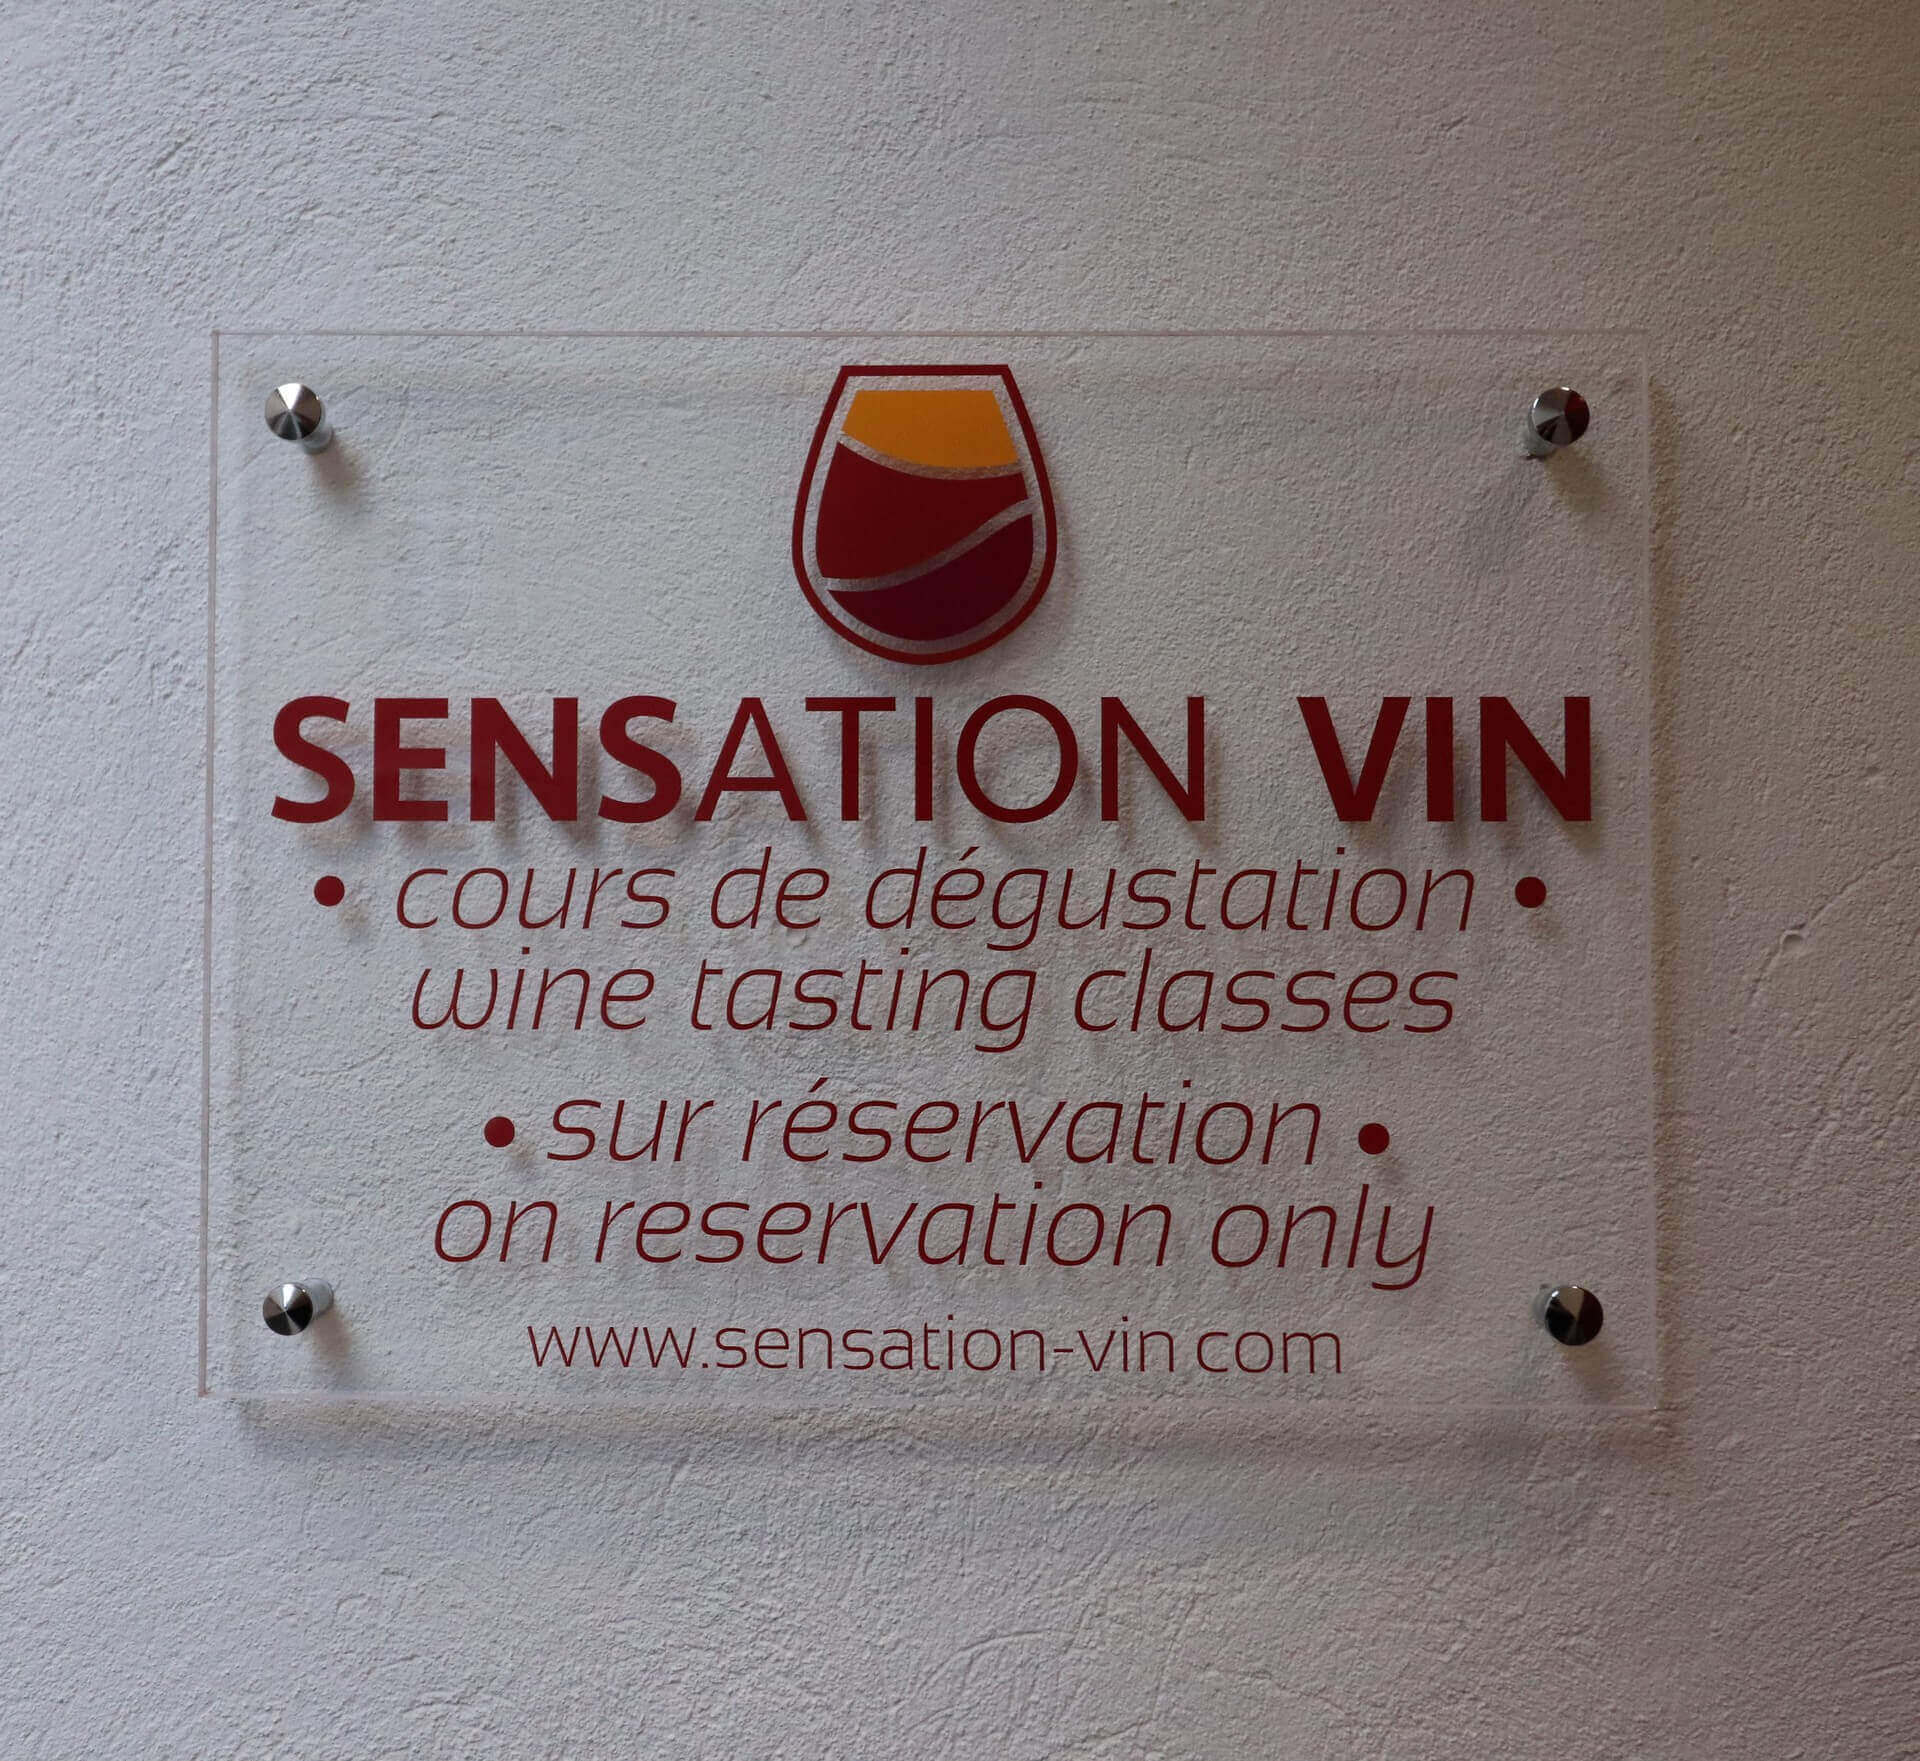 Sensation Vin propose des cours de dégustation au 2A Rue Paul Bouchard, au centre ville de Beaune.